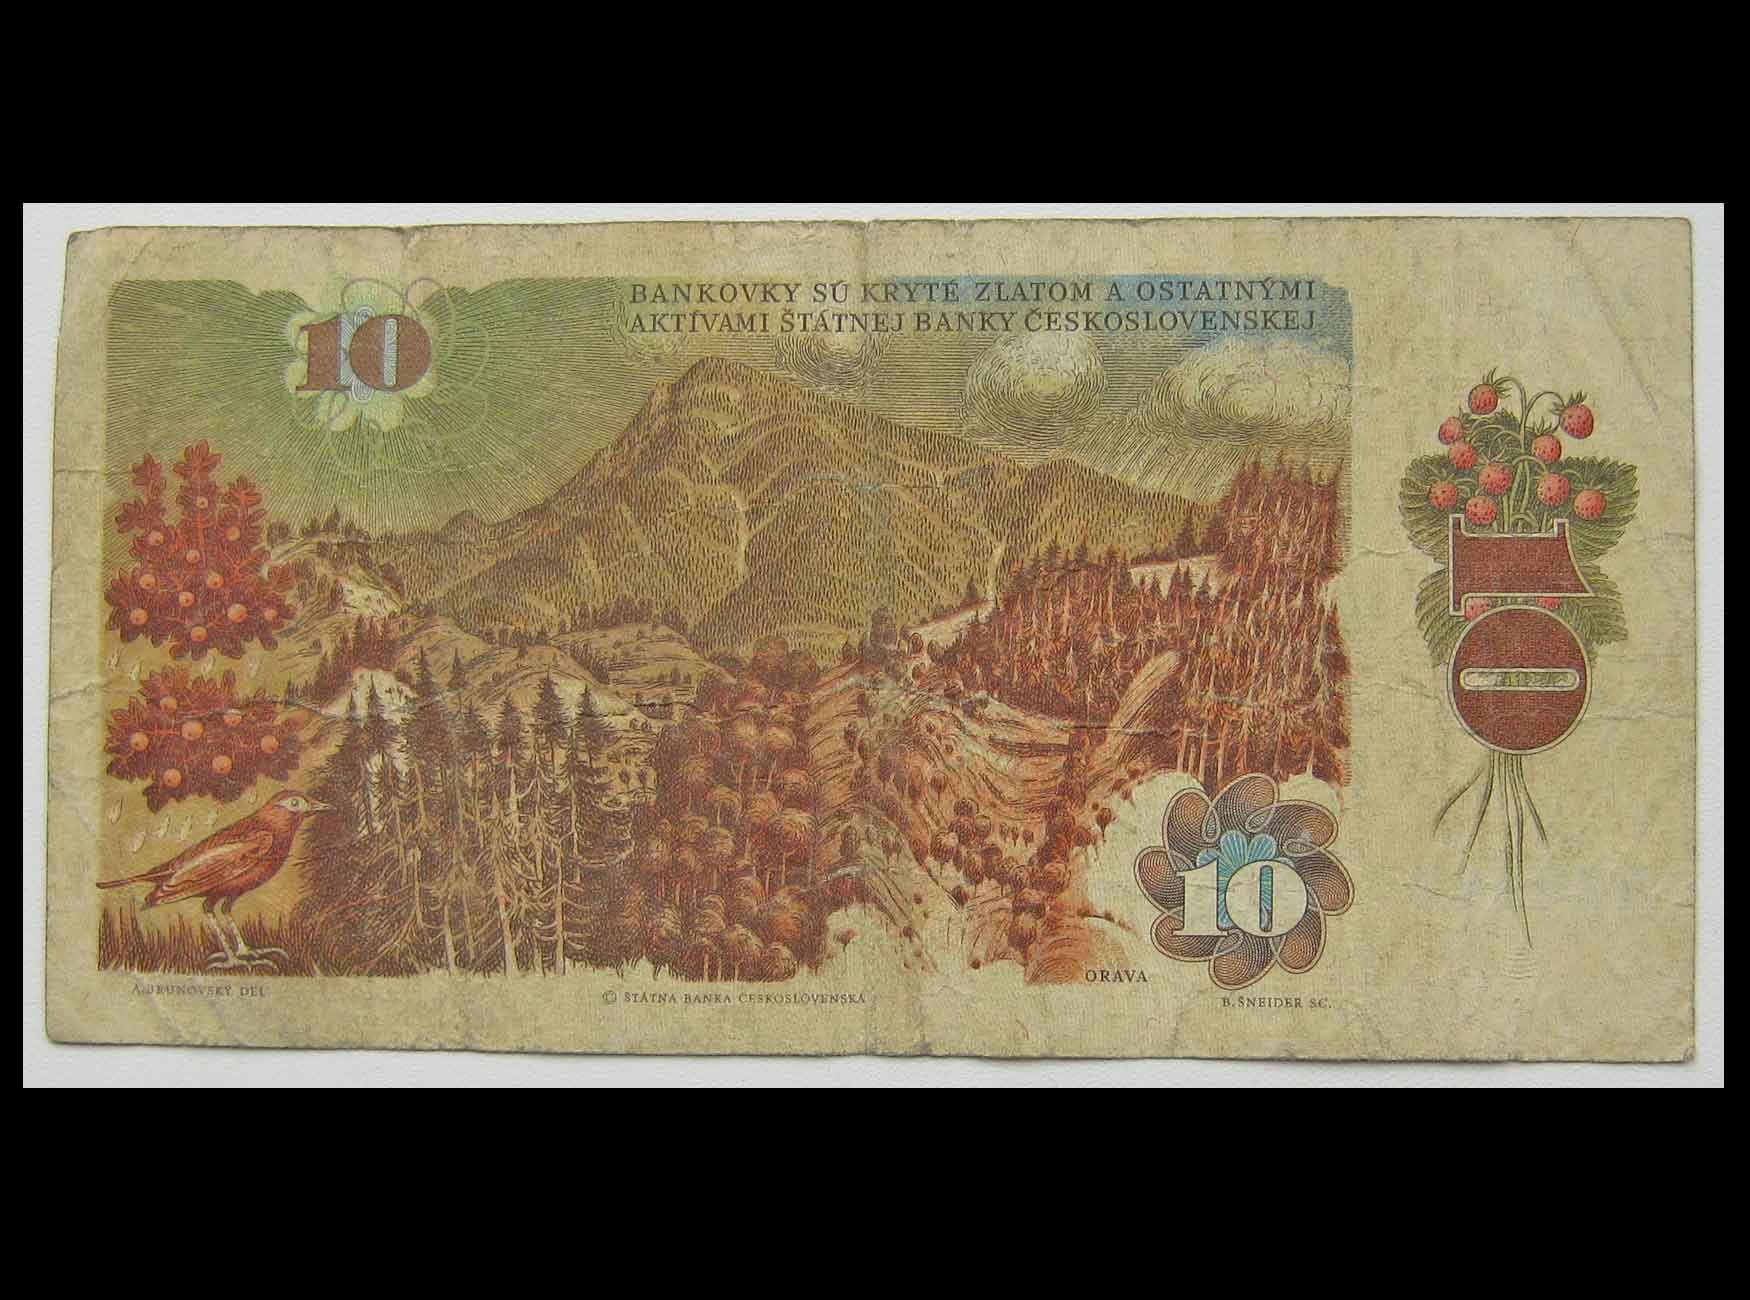 Купить в чехословакии. Банкнота Чехословакия 10 крон 1986.